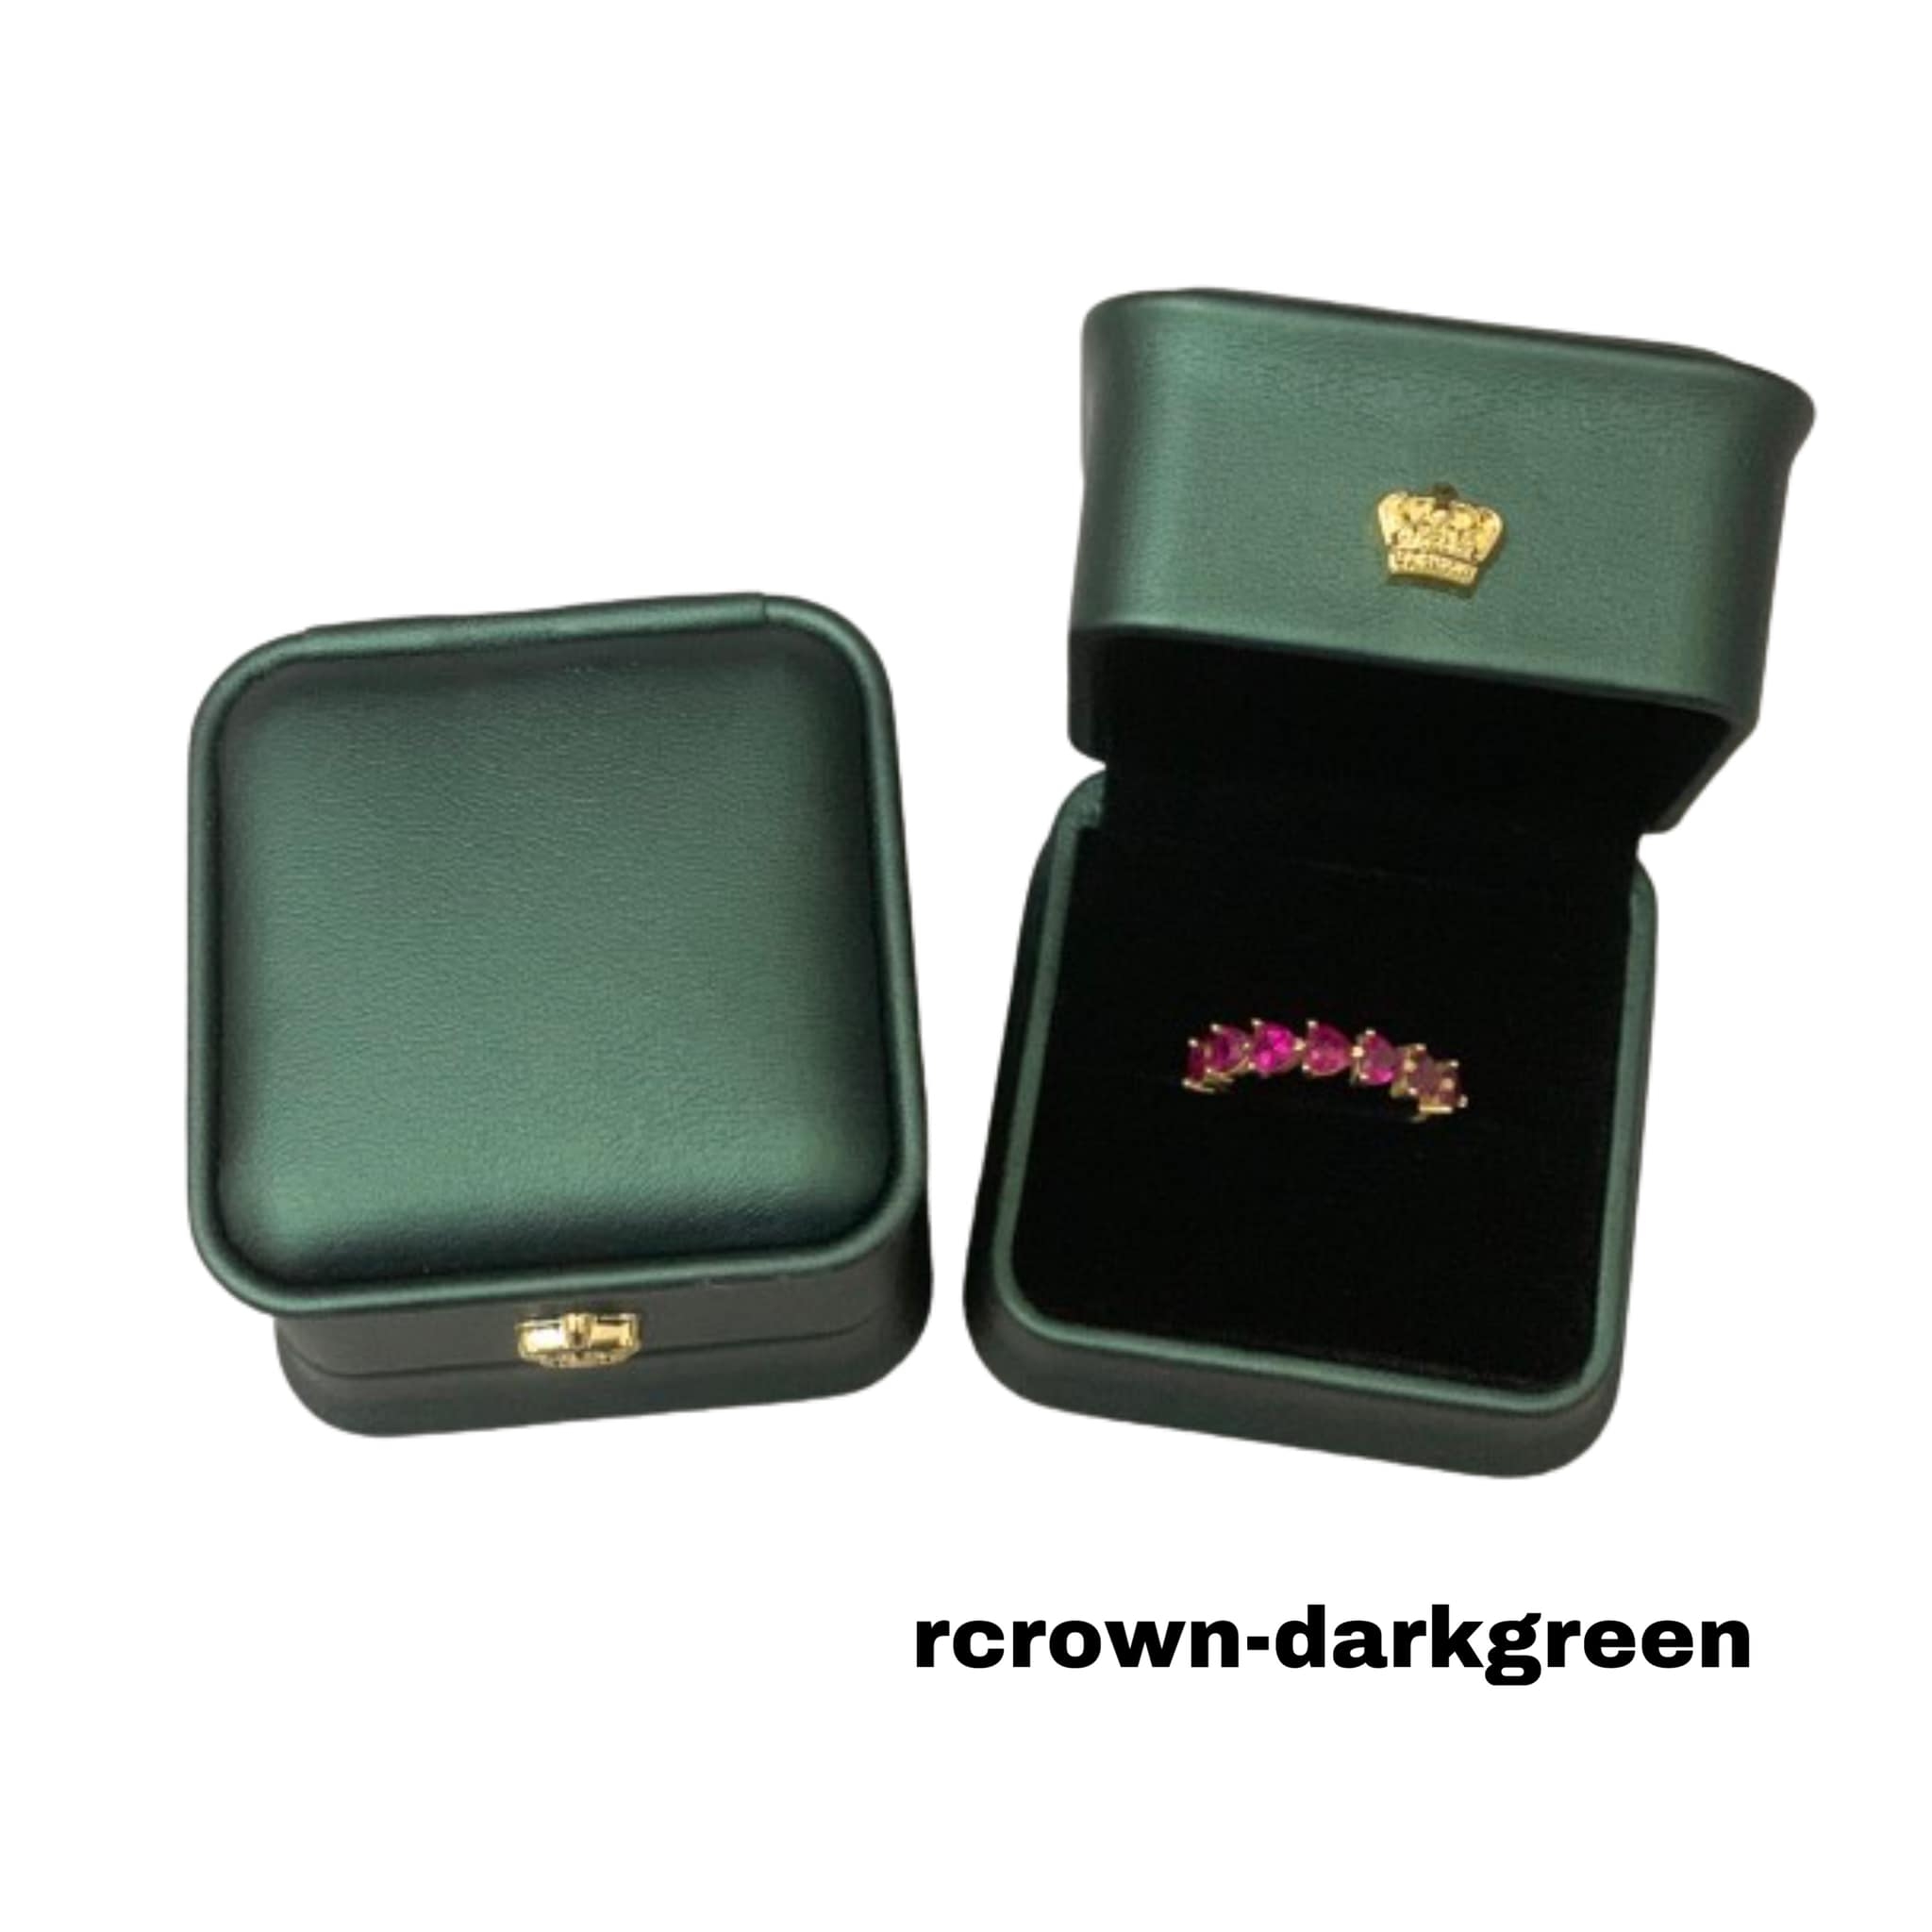 rcrown-darkgreen